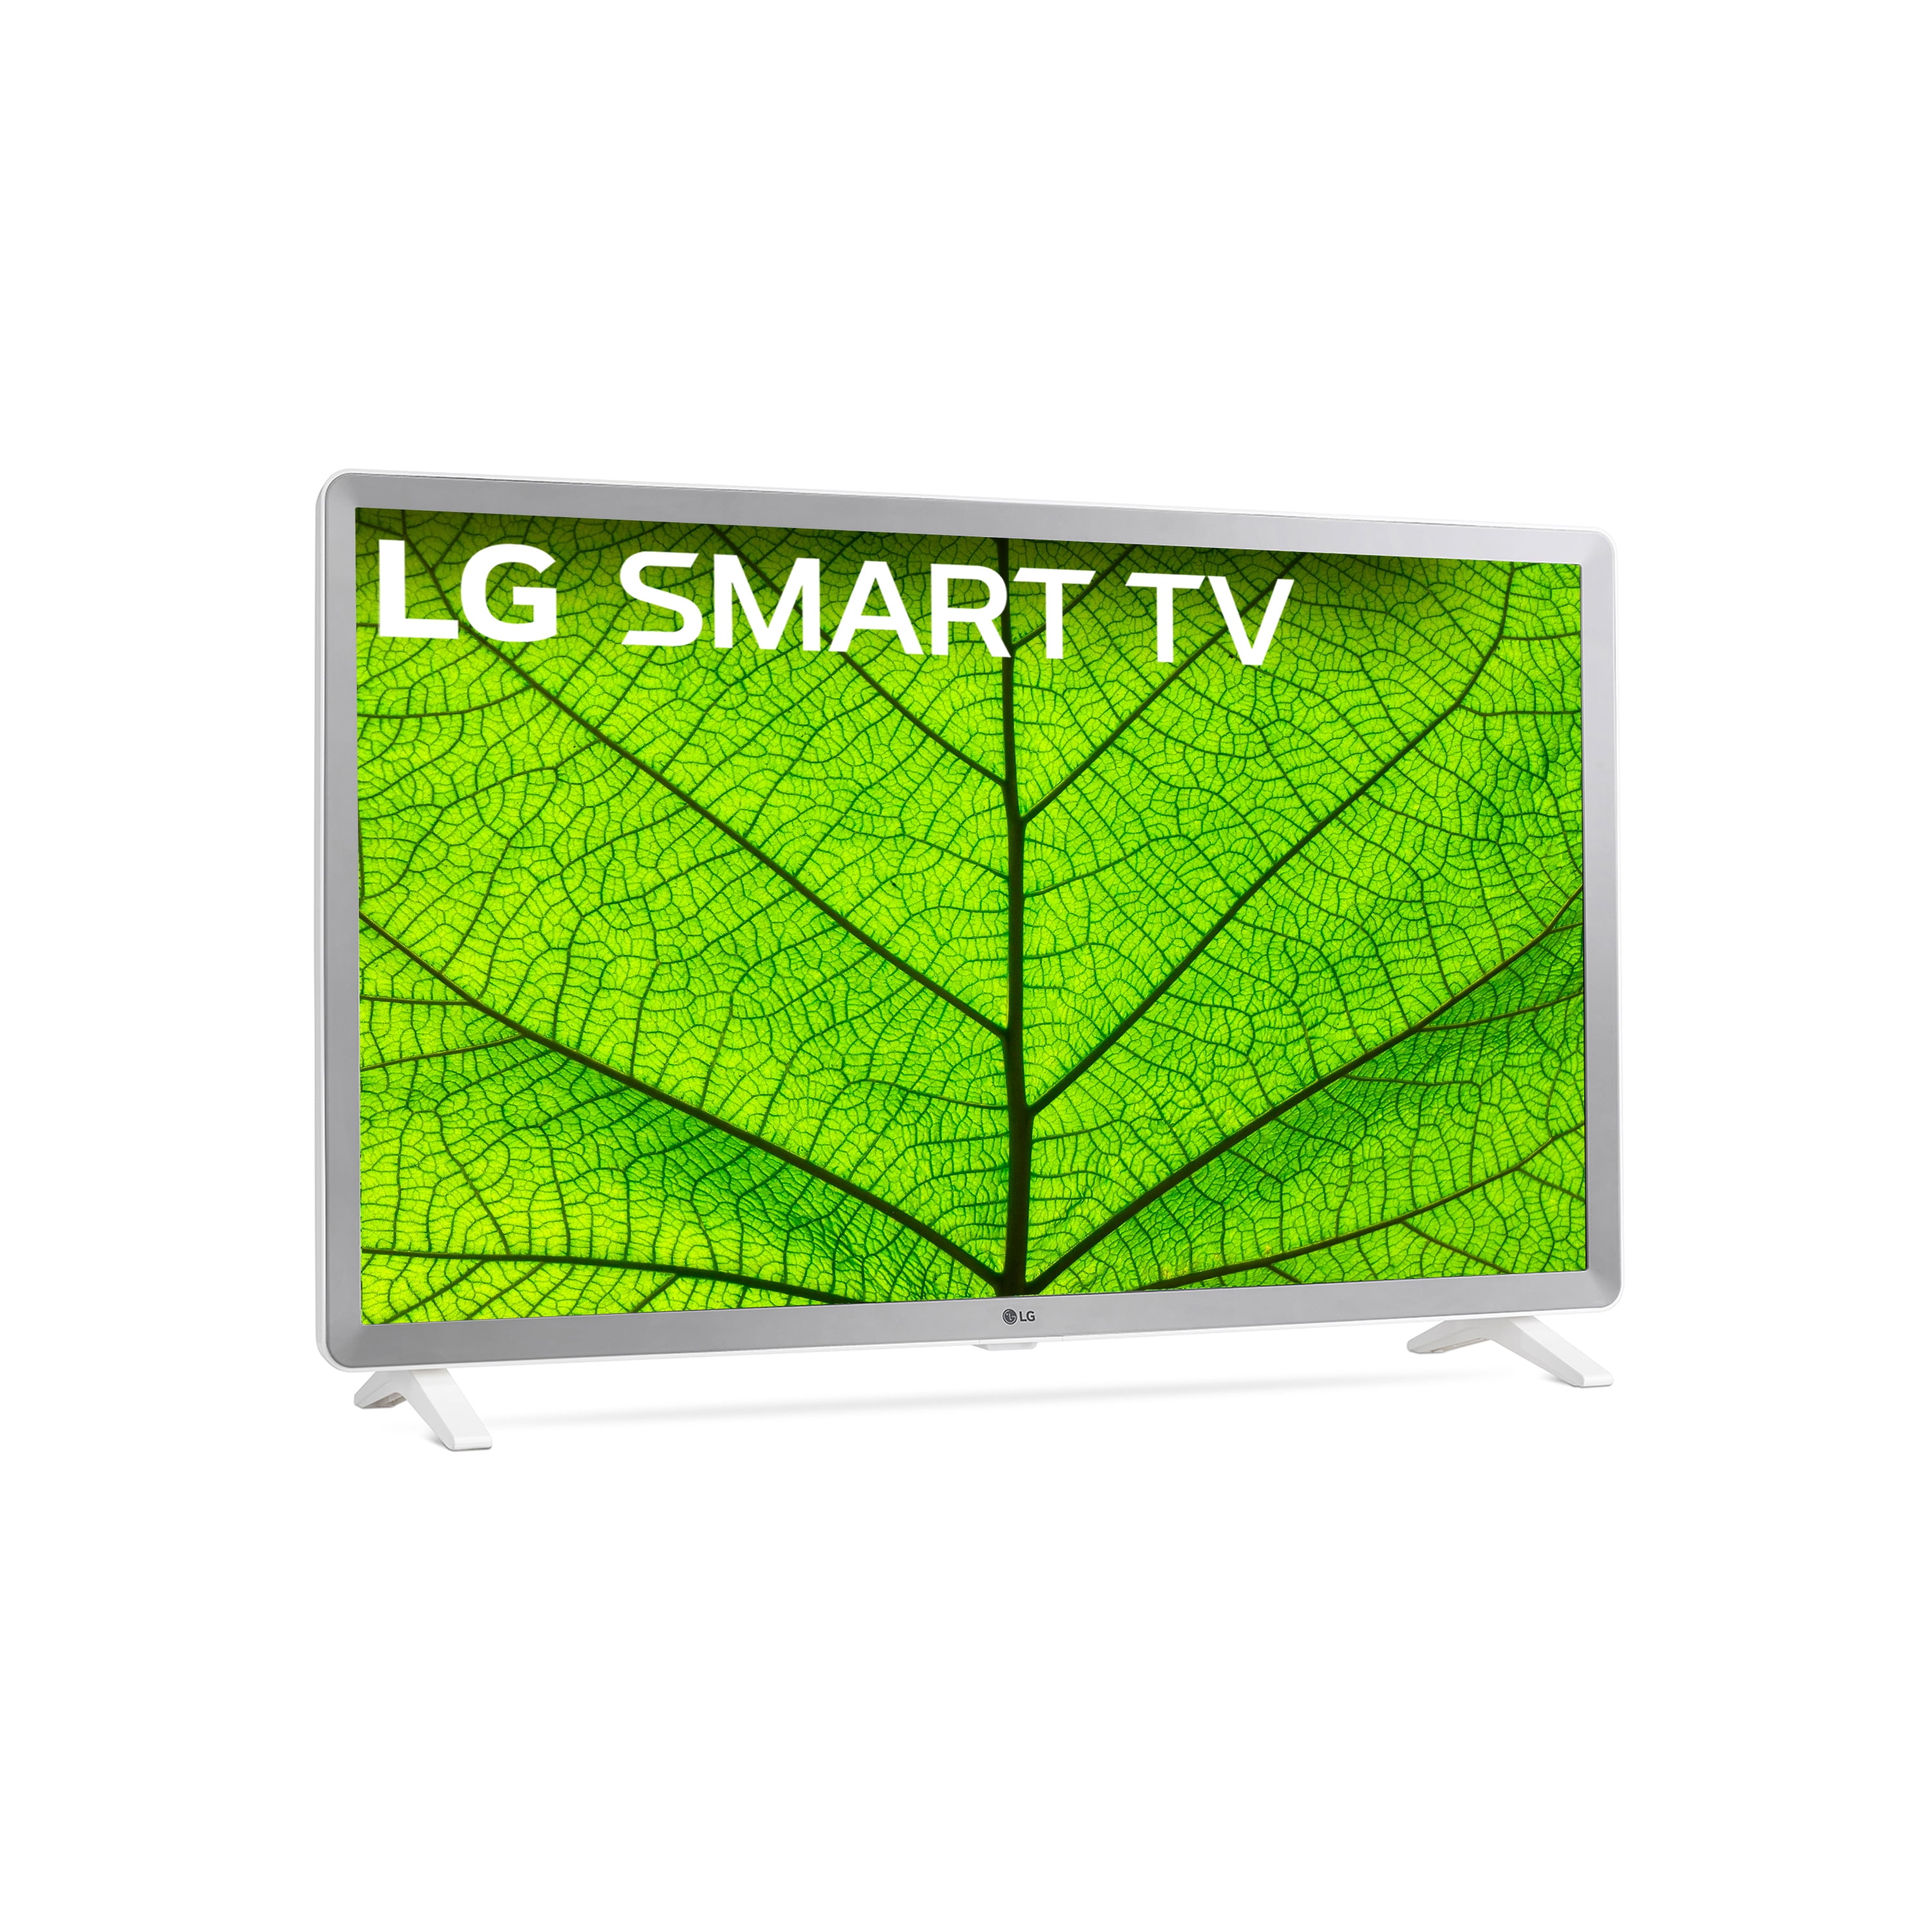 LG 32" Class Full HD HDR Smart LED TV 32LM620BPUA 2019 Model -